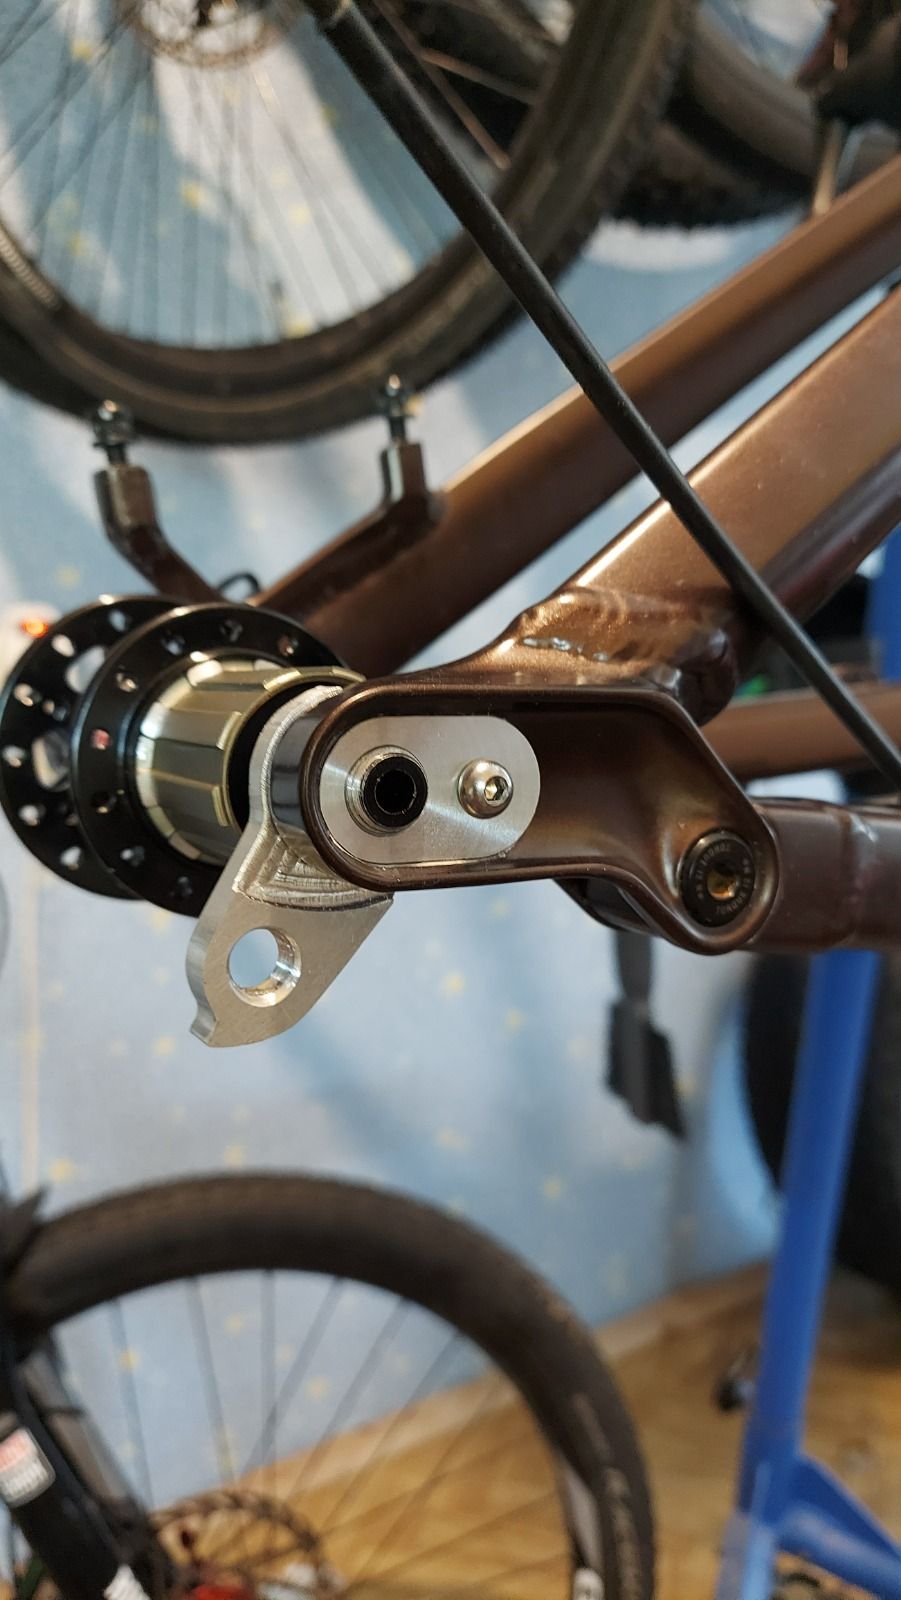 Изготовление петухов под QR и 12mm ось и прочая токарка/фрезеровка по велотеме.